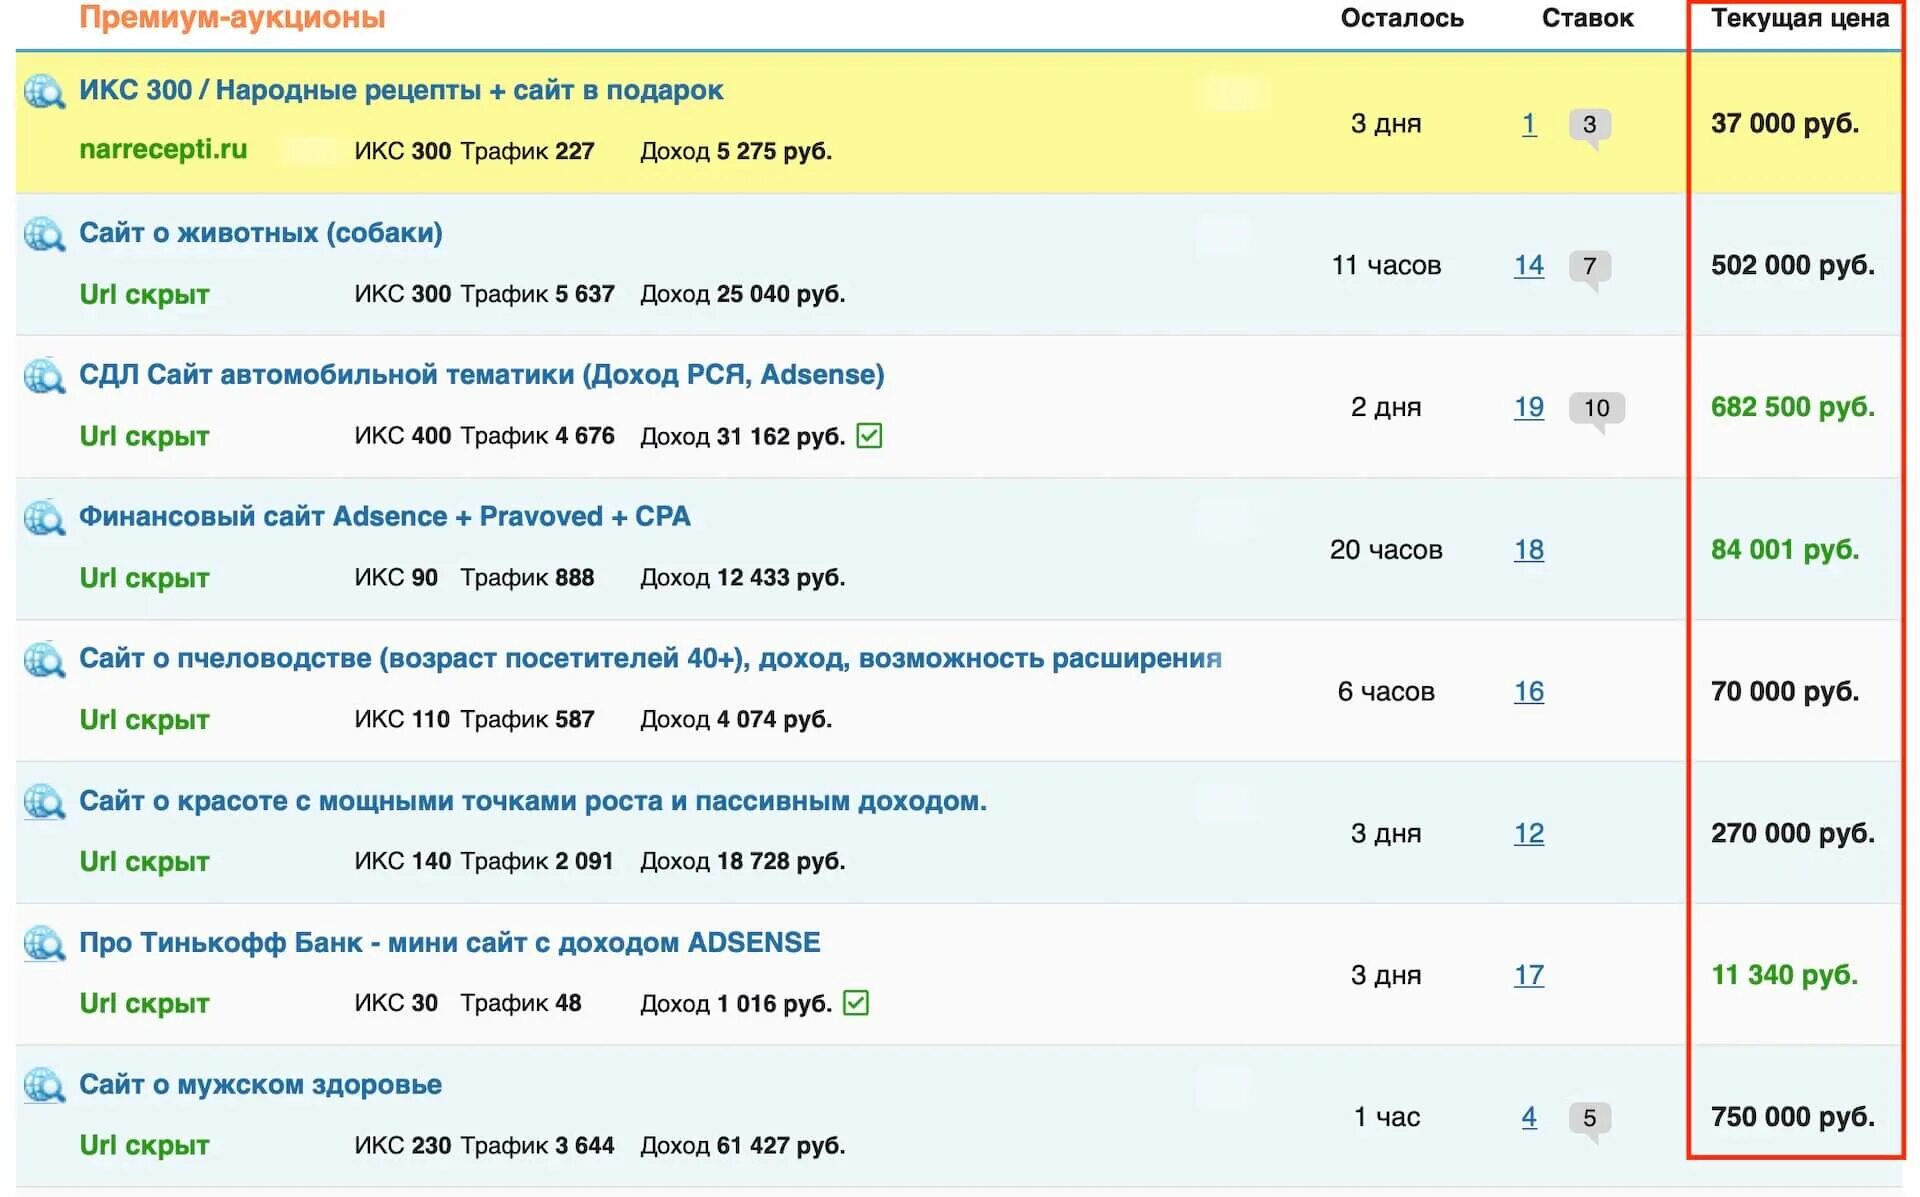 Список сайтов + биржи. Просмотр сайтов за рубли